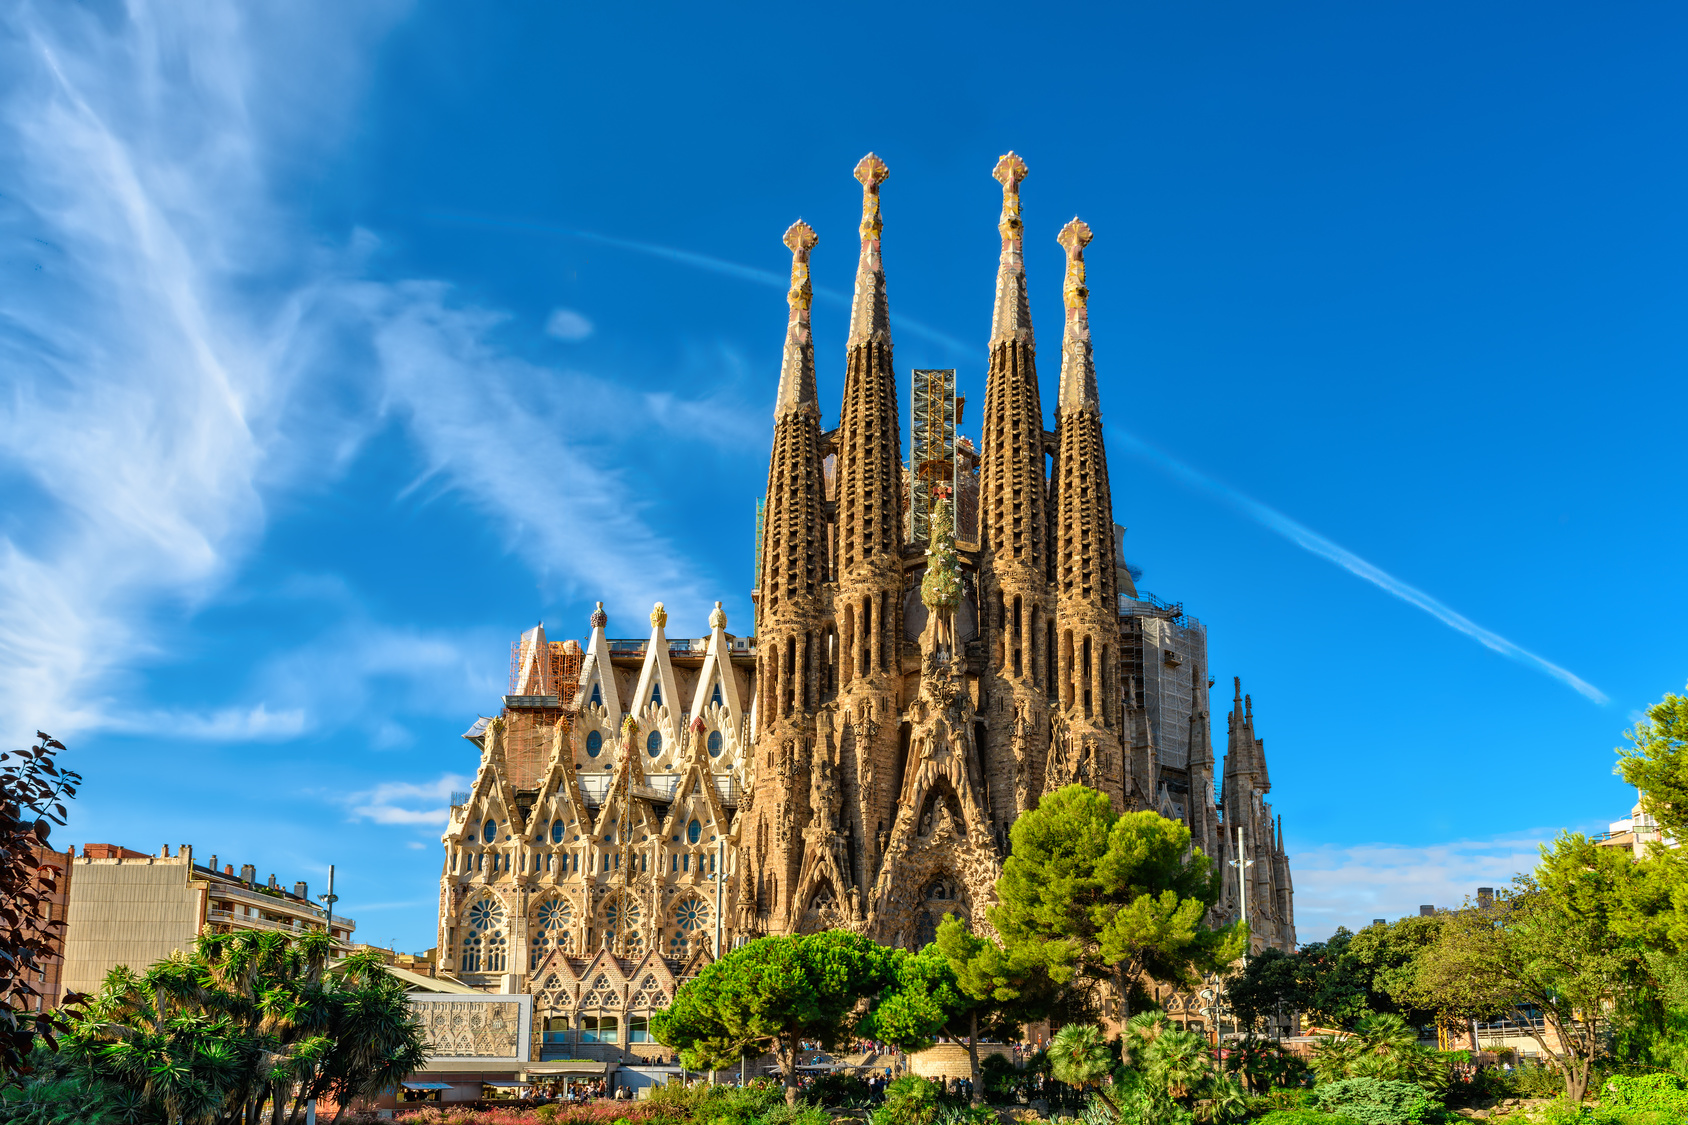 Barcelona - Gaudí mesevárosa | OTP Travel Utazási Iroda